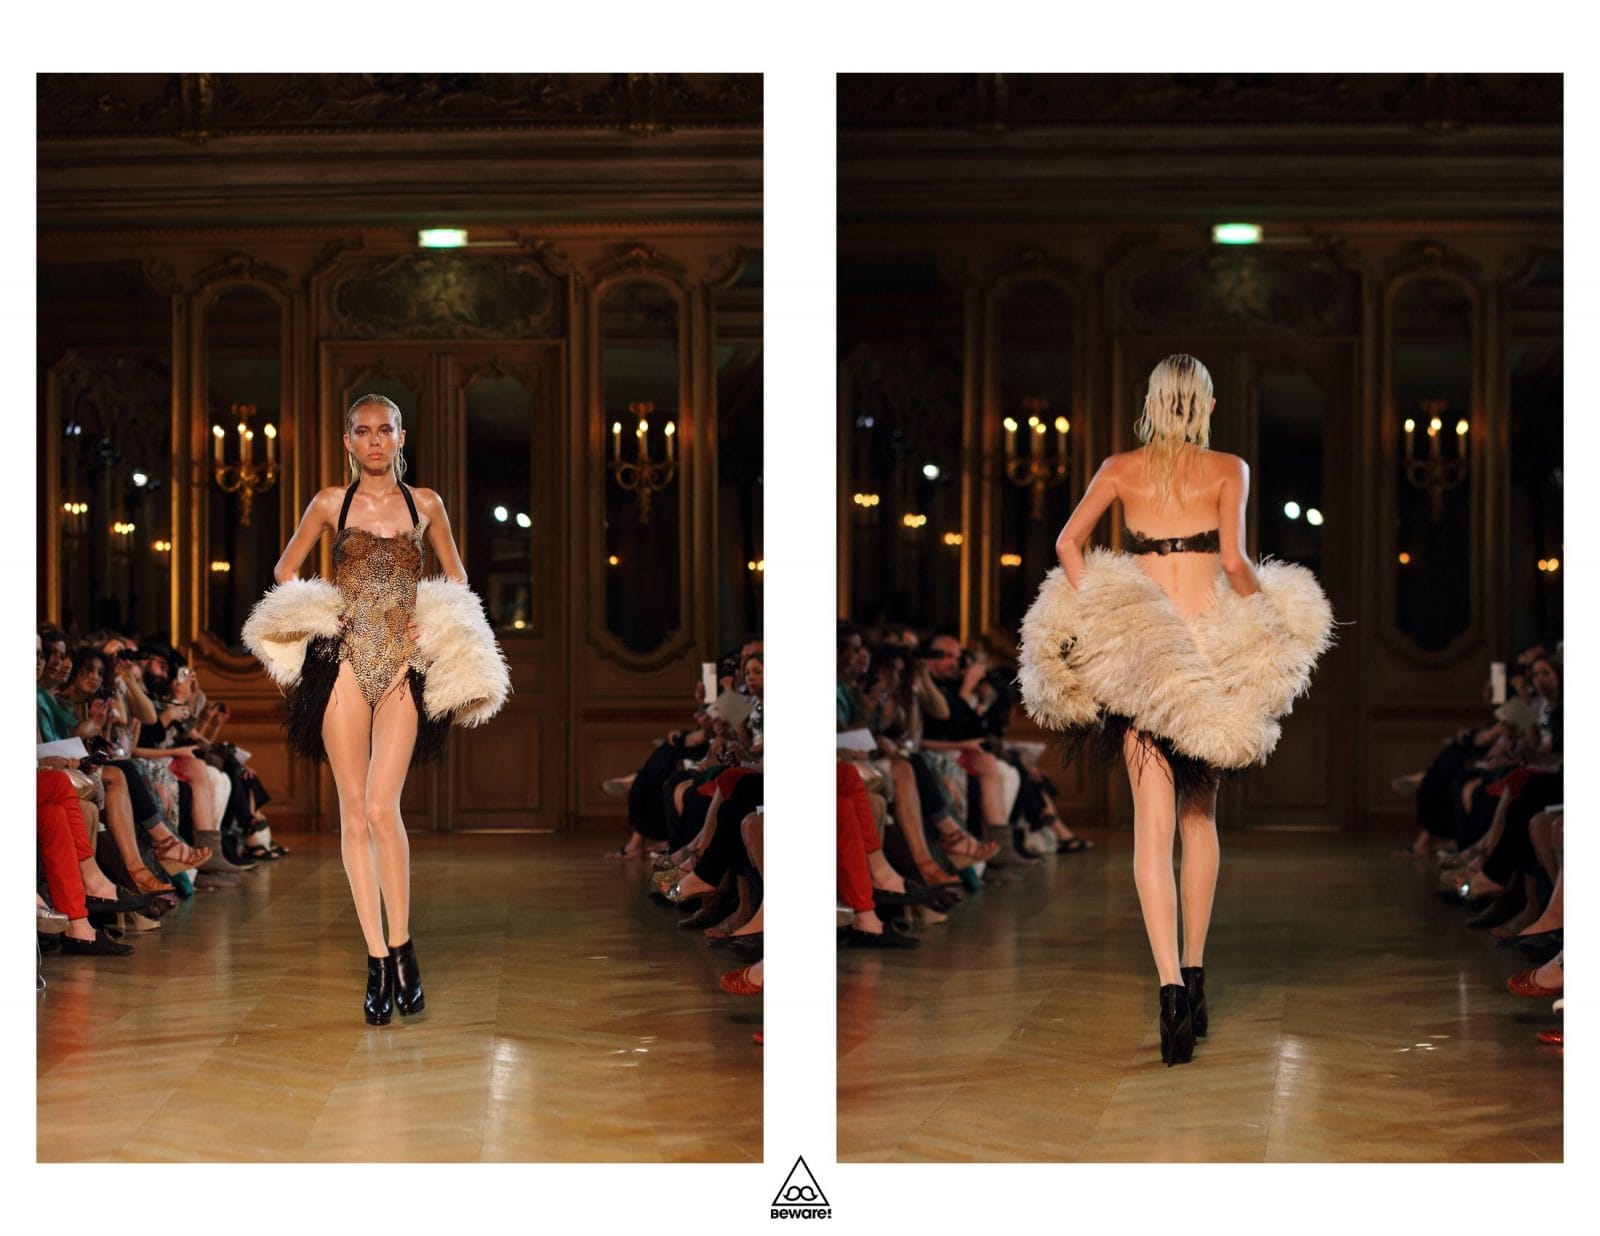 Défilé Haute Couture 2012/13 : Serkan Cura 19